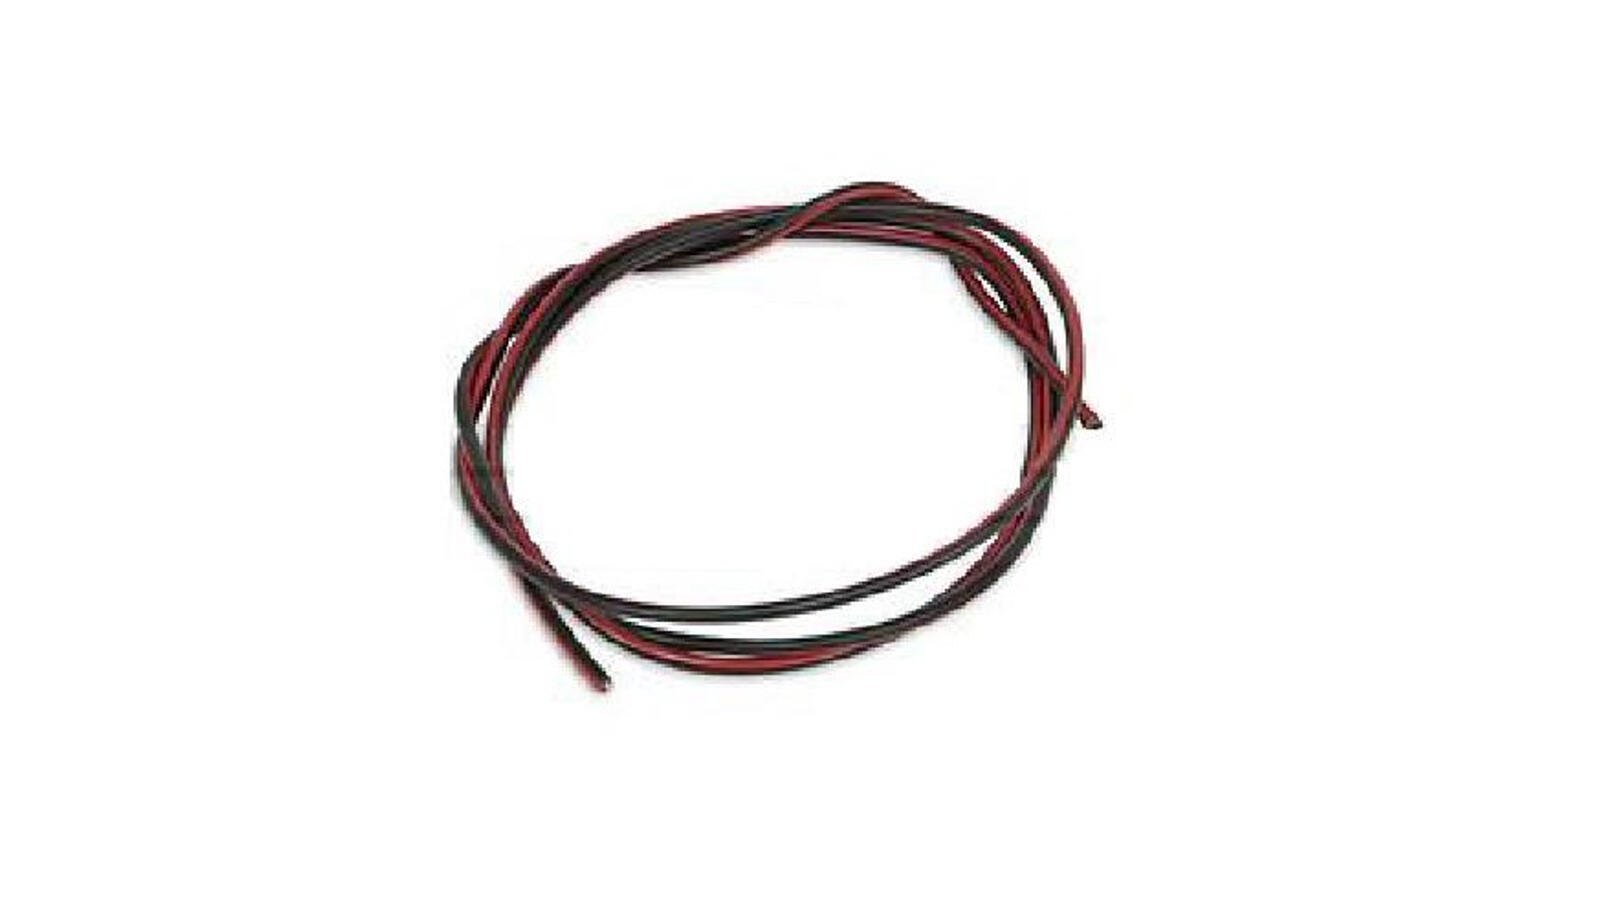 Kabel 1,5mm² 1m schwarz | rot